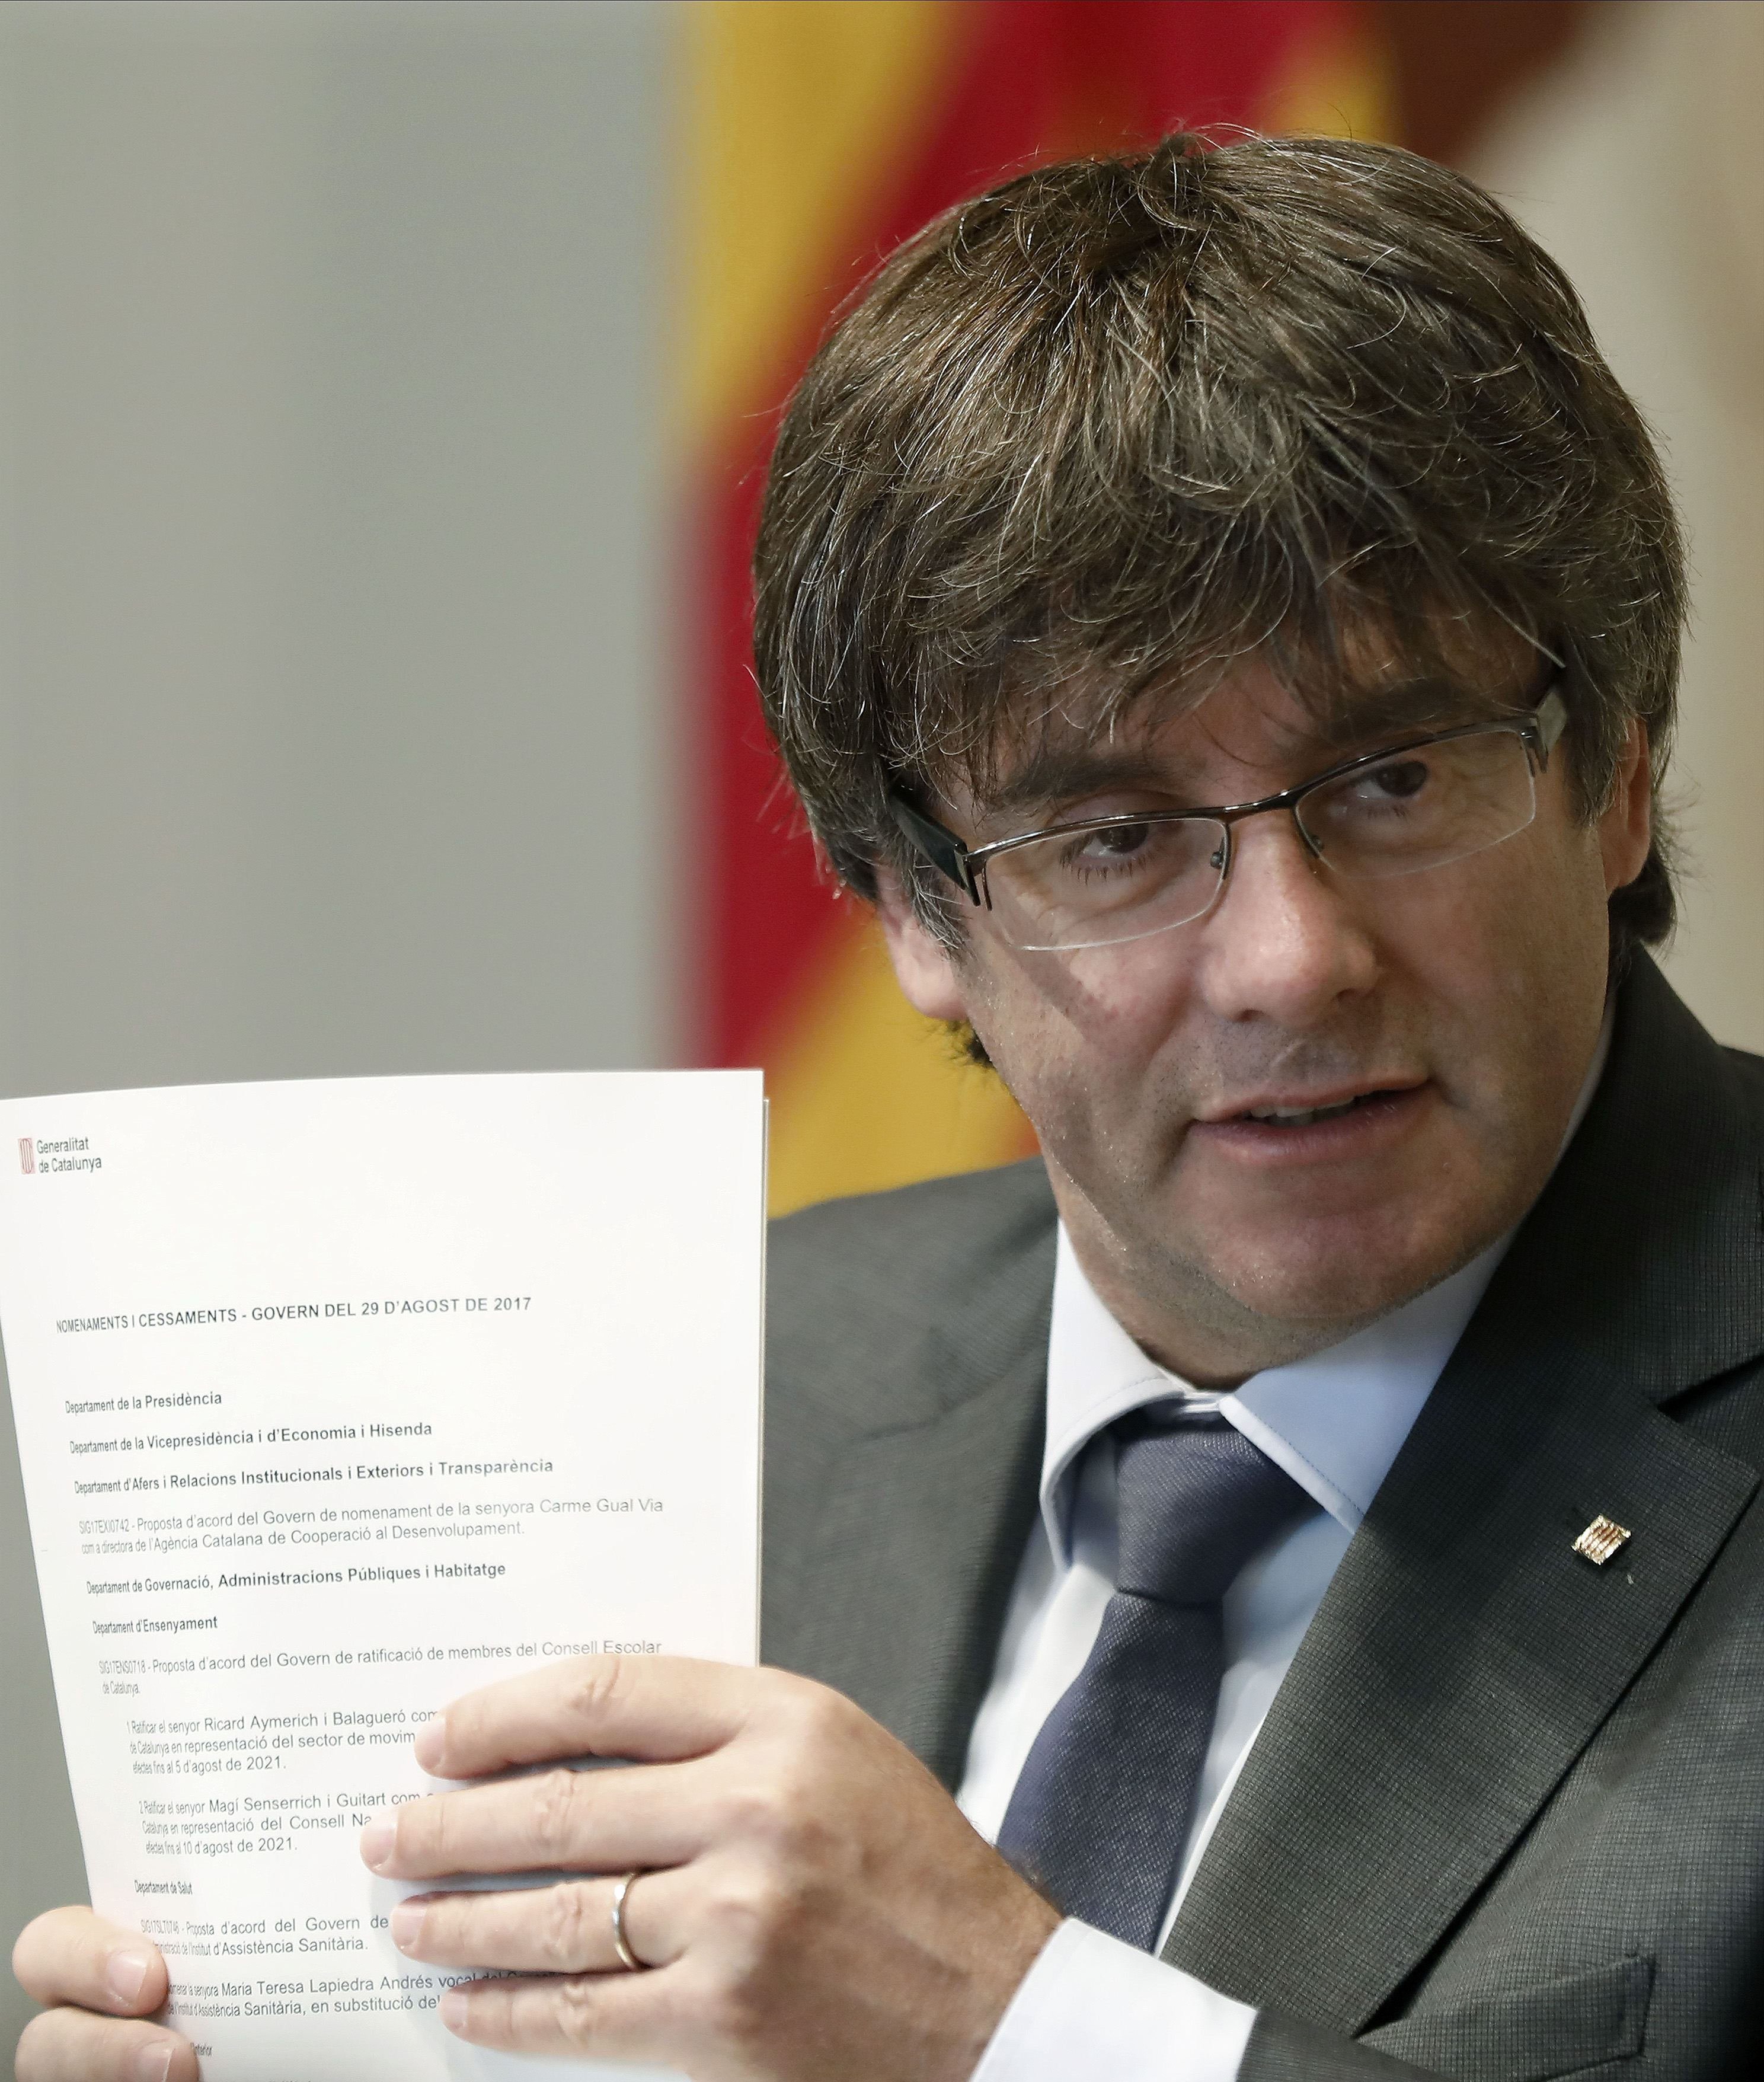 Puigdemont responde al duro discurso de Rajoy: "Está en marcha la operación provocación"